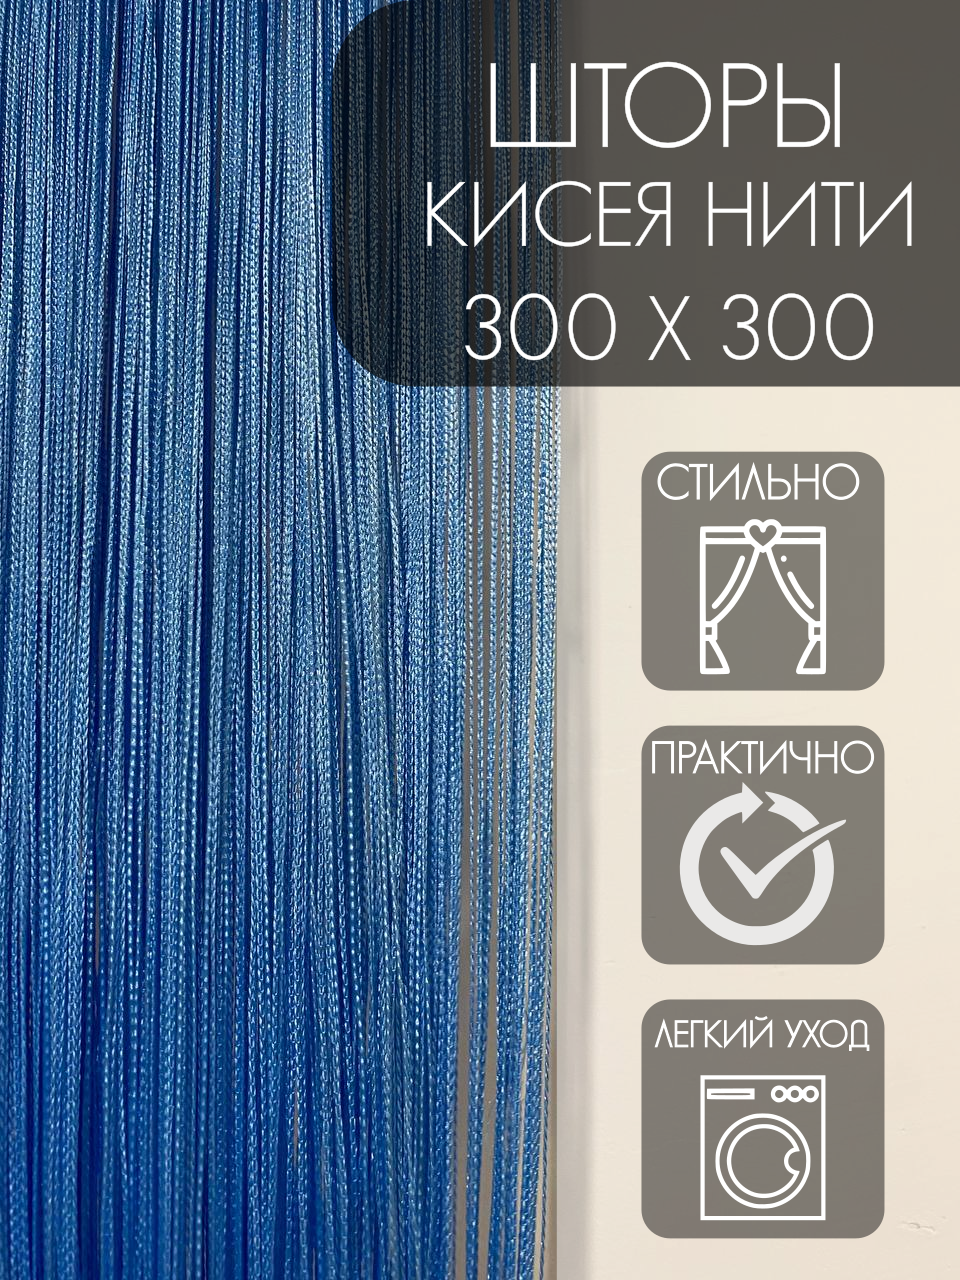 Нитяные шторы "Кисея", без люрекса, 300х300 см, голубой